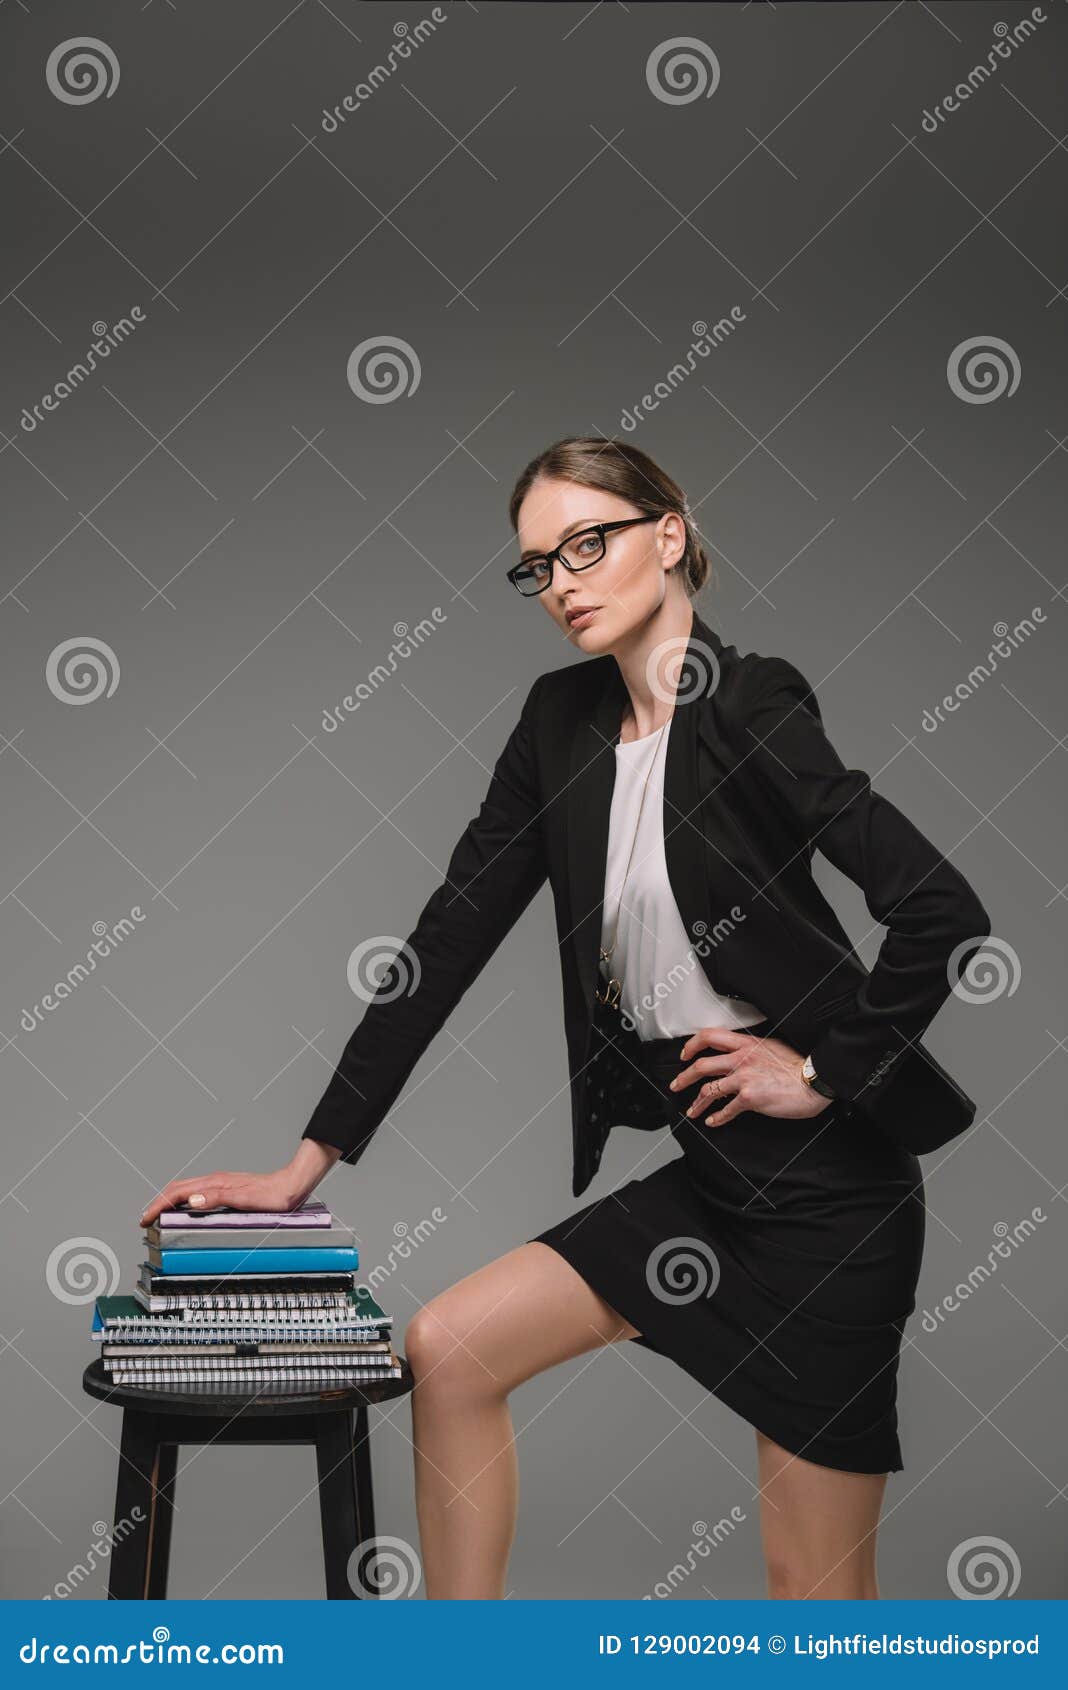 Female Teacher In Eyeglasses Standing Near Stack Of Textbooks On Chair 